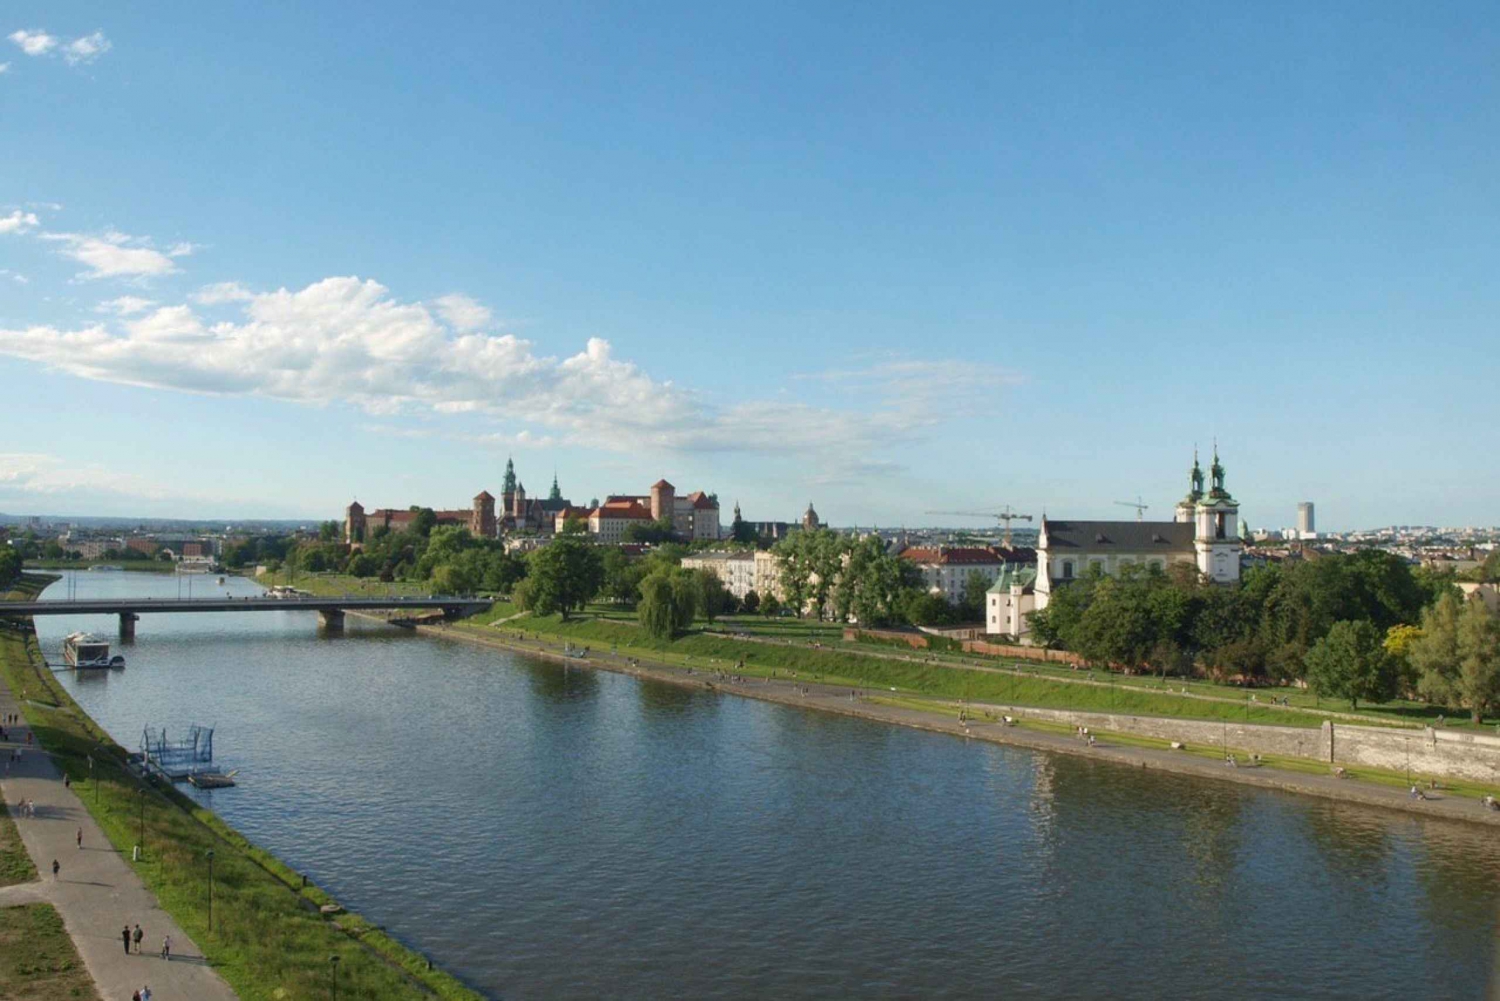 Cracóvia: Cruzeiro curto e visita guiada à Fábrica de Schindler